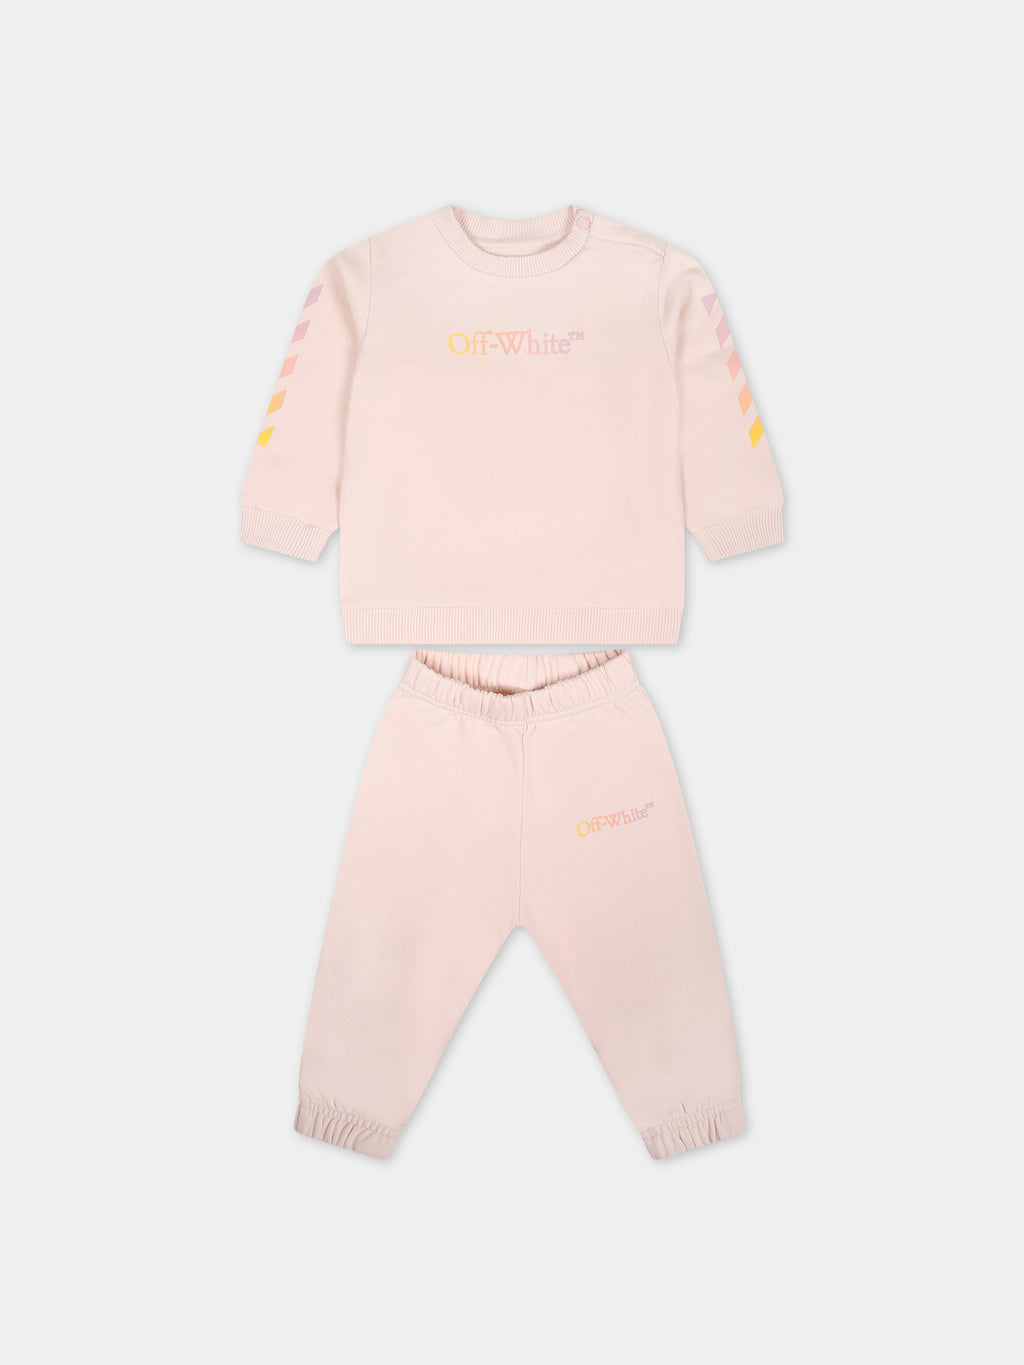 Tenue rose pour bébé fille avec logo